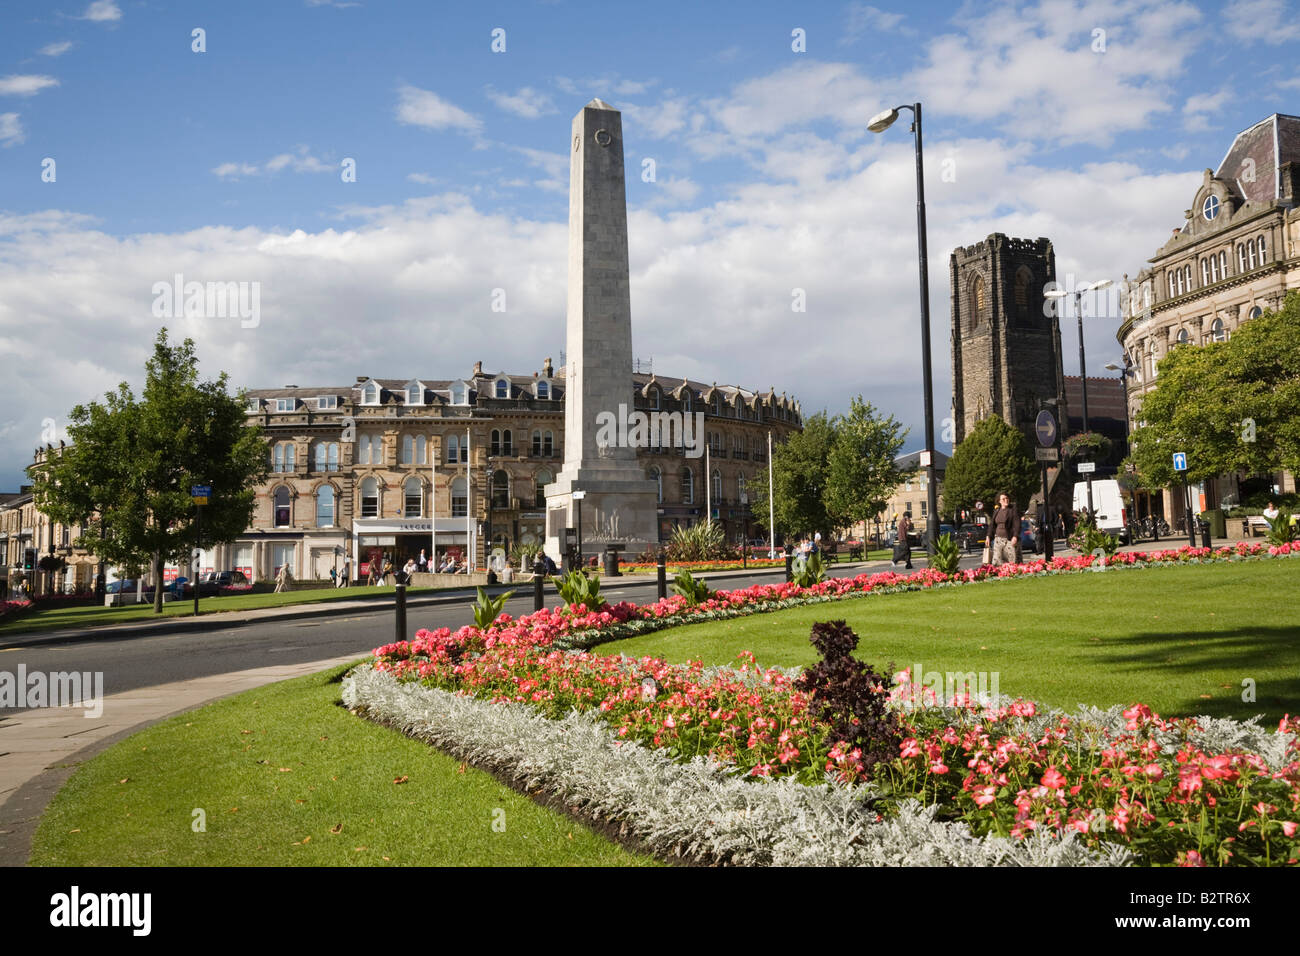 Il cenotafio War Memorial obelisco di tutta la prospettiva di giardini in centro città in estate in Harrogate Yorkshire England Regno Unito Foto Stock